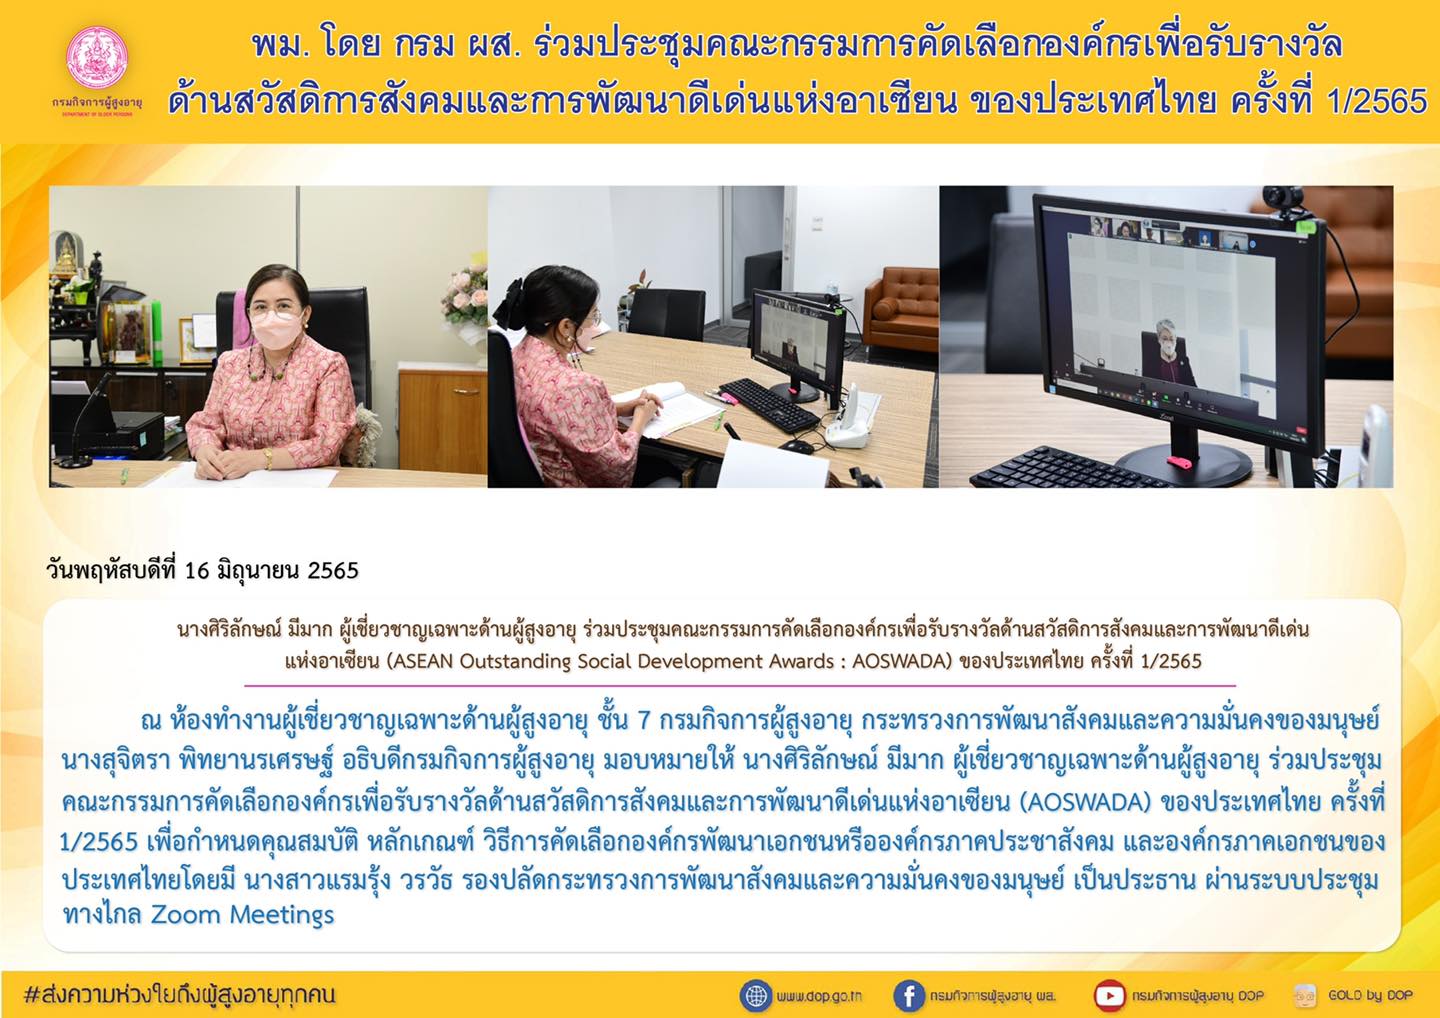 พม. โดย กรม ผส. ร่วมประชุมคณะกรรมการคัดเลือกองค์กรเพื่อรับรางวัลด้านสวัสดิการสังคมและการพัฒนาดีเด่นแห่งอาเซียน ของประเทศไทย ครั้งที่ 1/2565